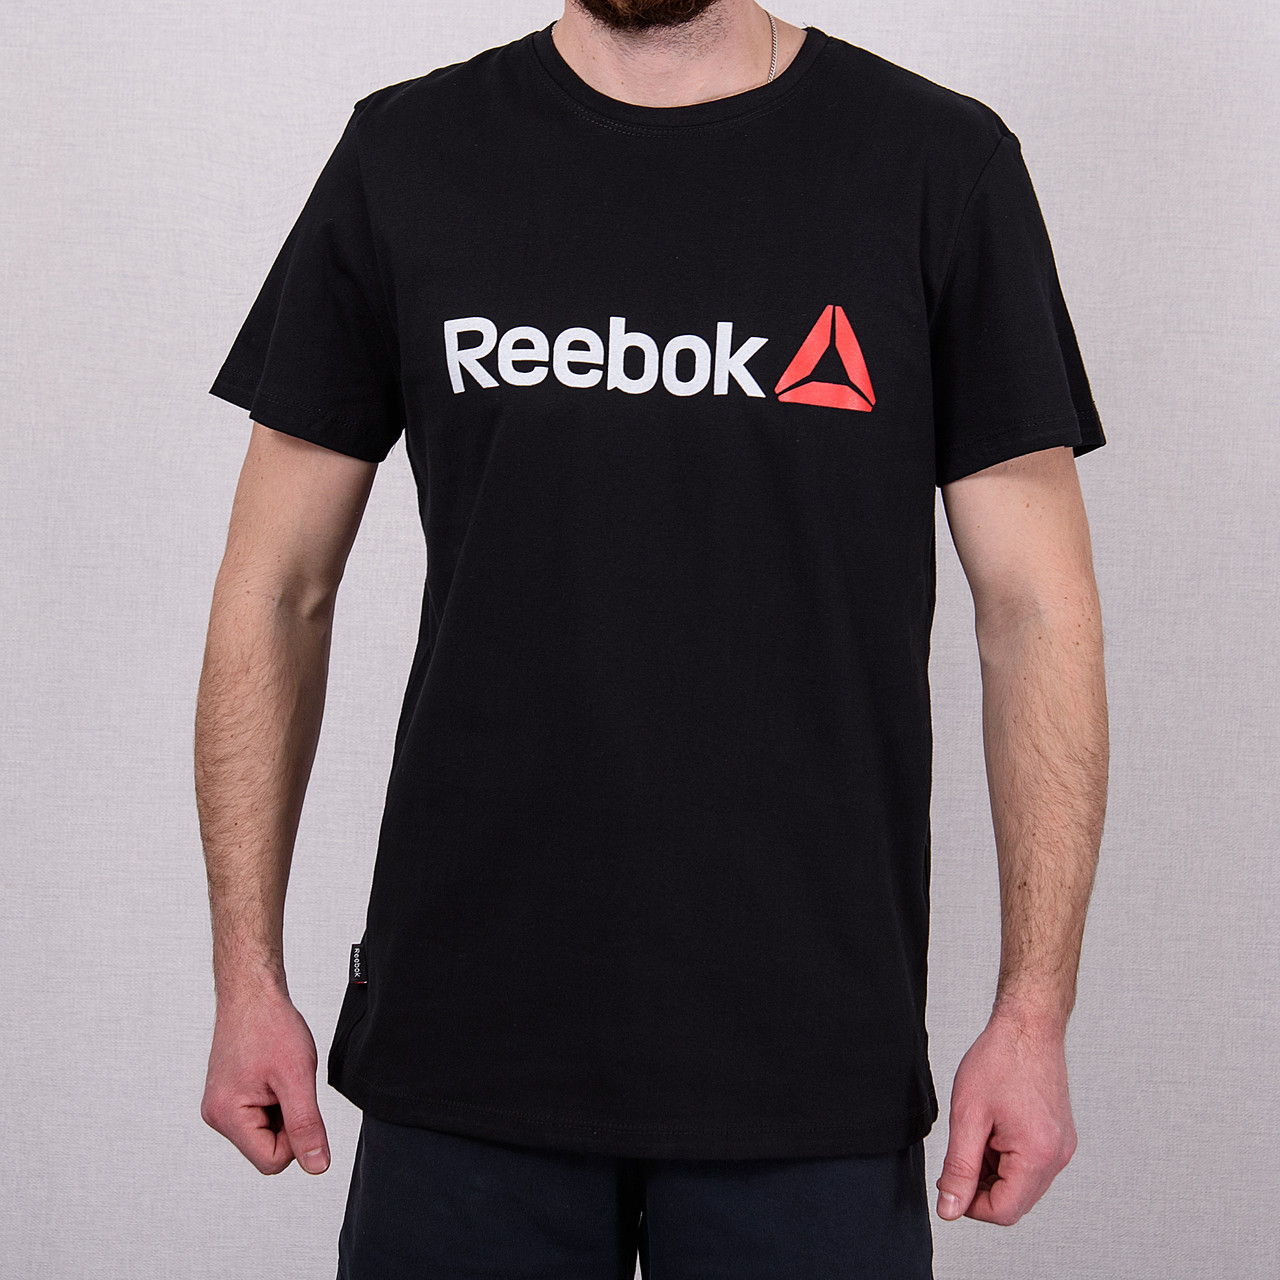 Чоловіча спортивна футболка Reebok великого розміру, чорного кольору